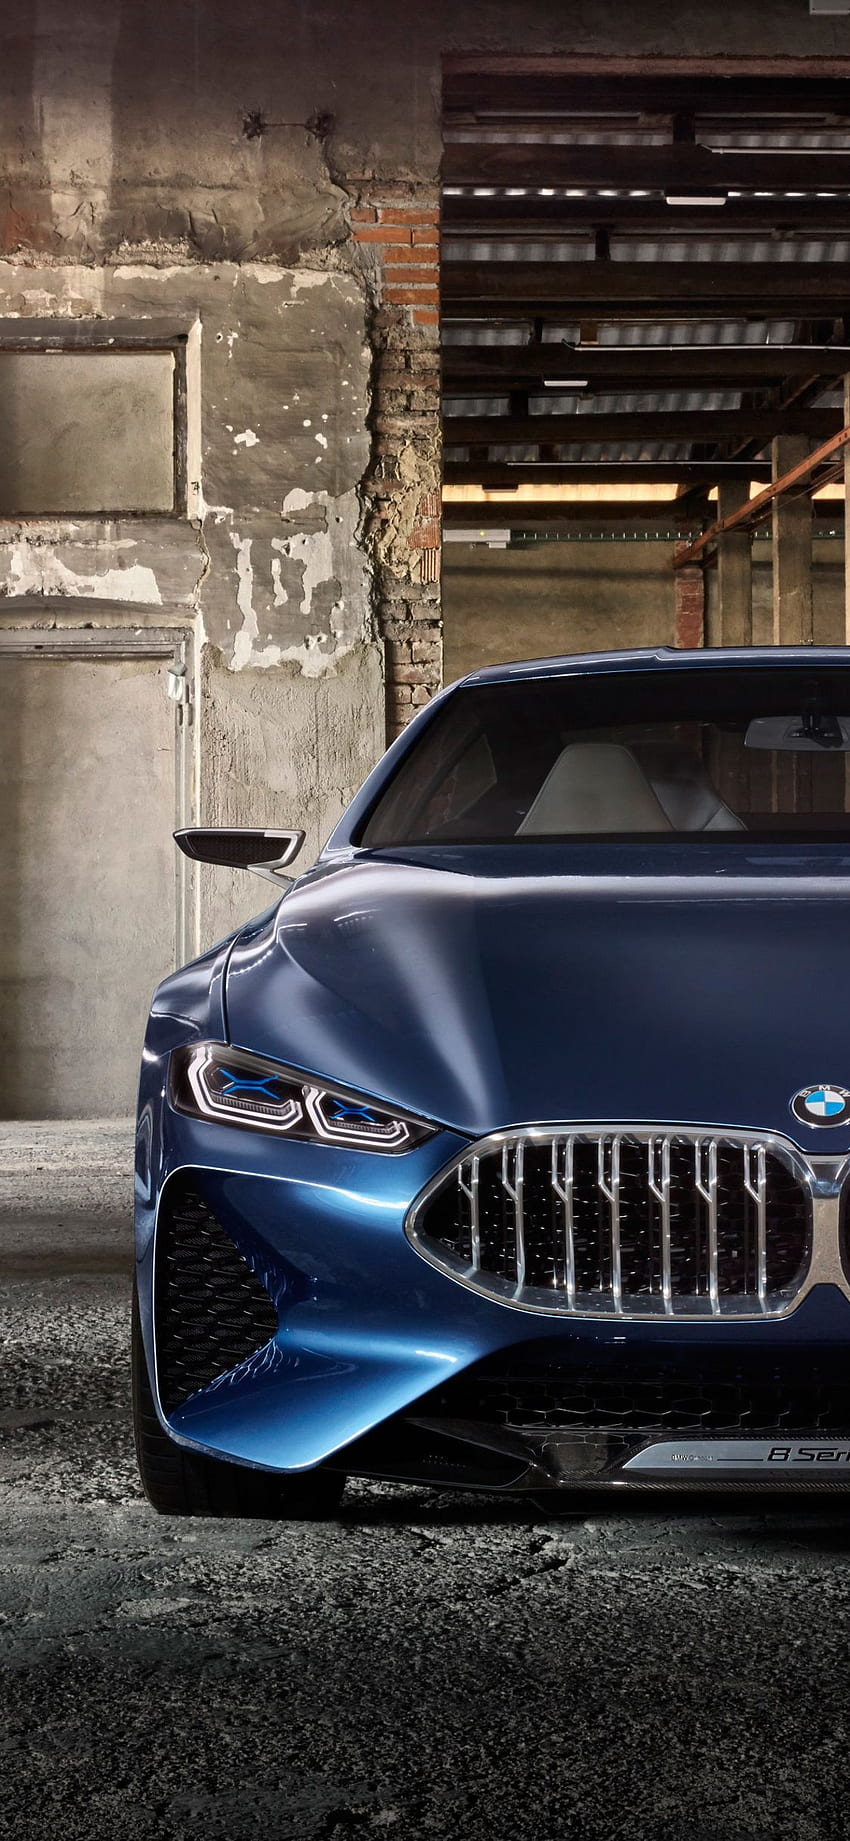 BMW luôn là biểu tượng của sự sang trọng và đẳng cấp. Xem những hình ảnh về những chiếc xe hơi này sẽ khiến bạn kinh ngạc với mẫu thiết kế hiện đại và công nghệ tiên tiến nhất. Đừng bỏ lỡ cơ hội để thưởng thức những hình ảnh tuyệt đẹp này.